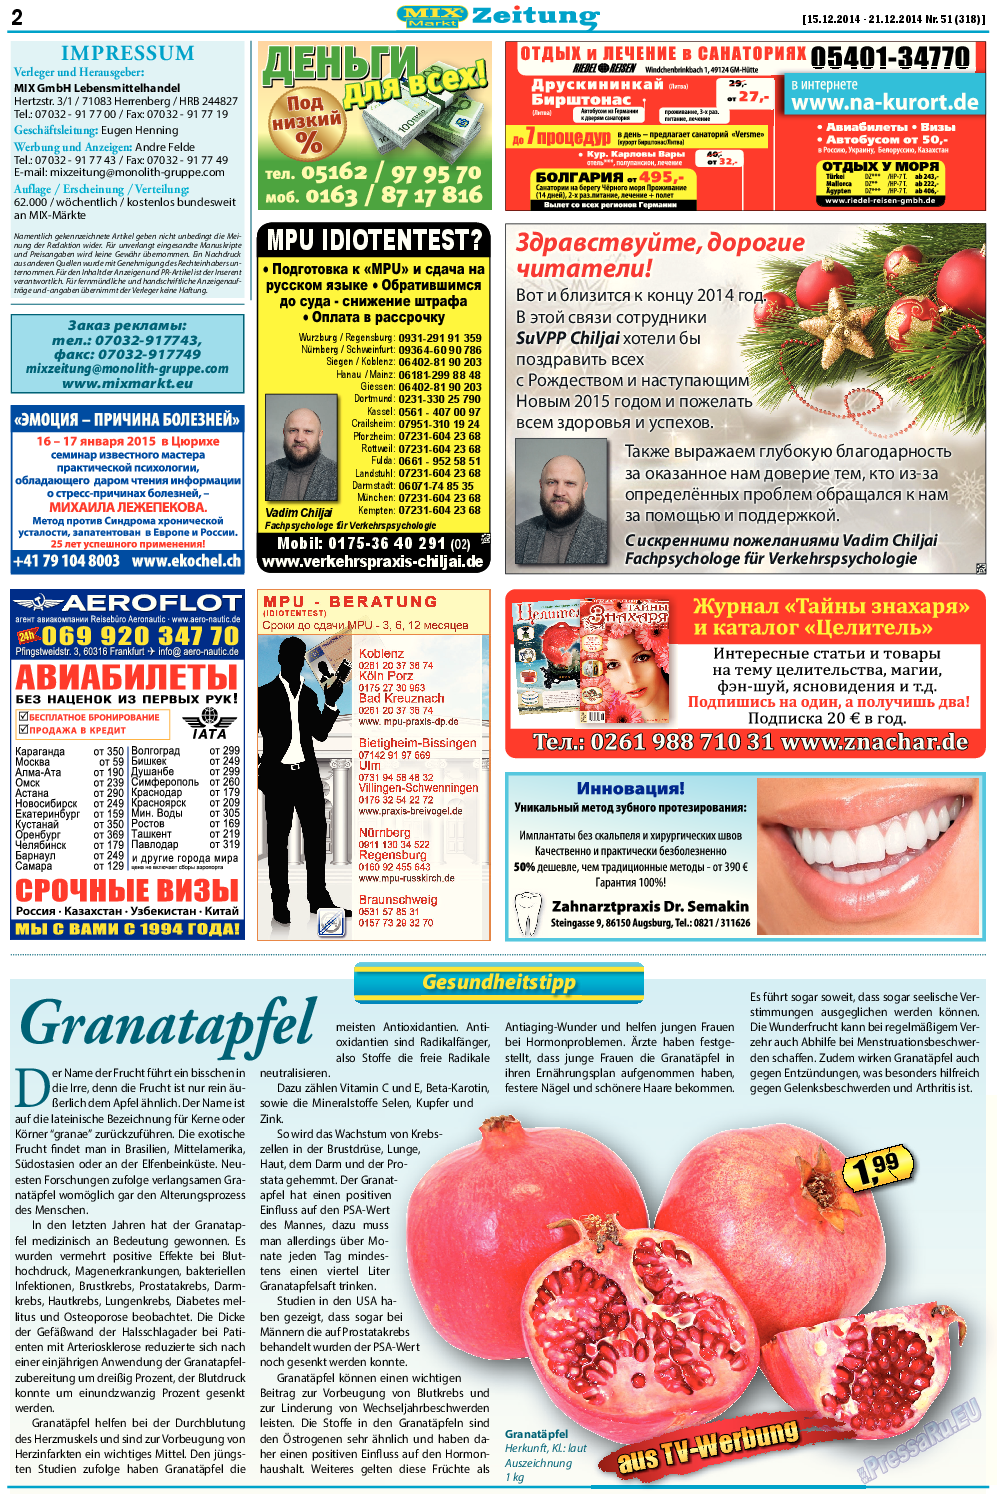 MIX-Markt Zeitung, газета. 2014 №51 стр.2